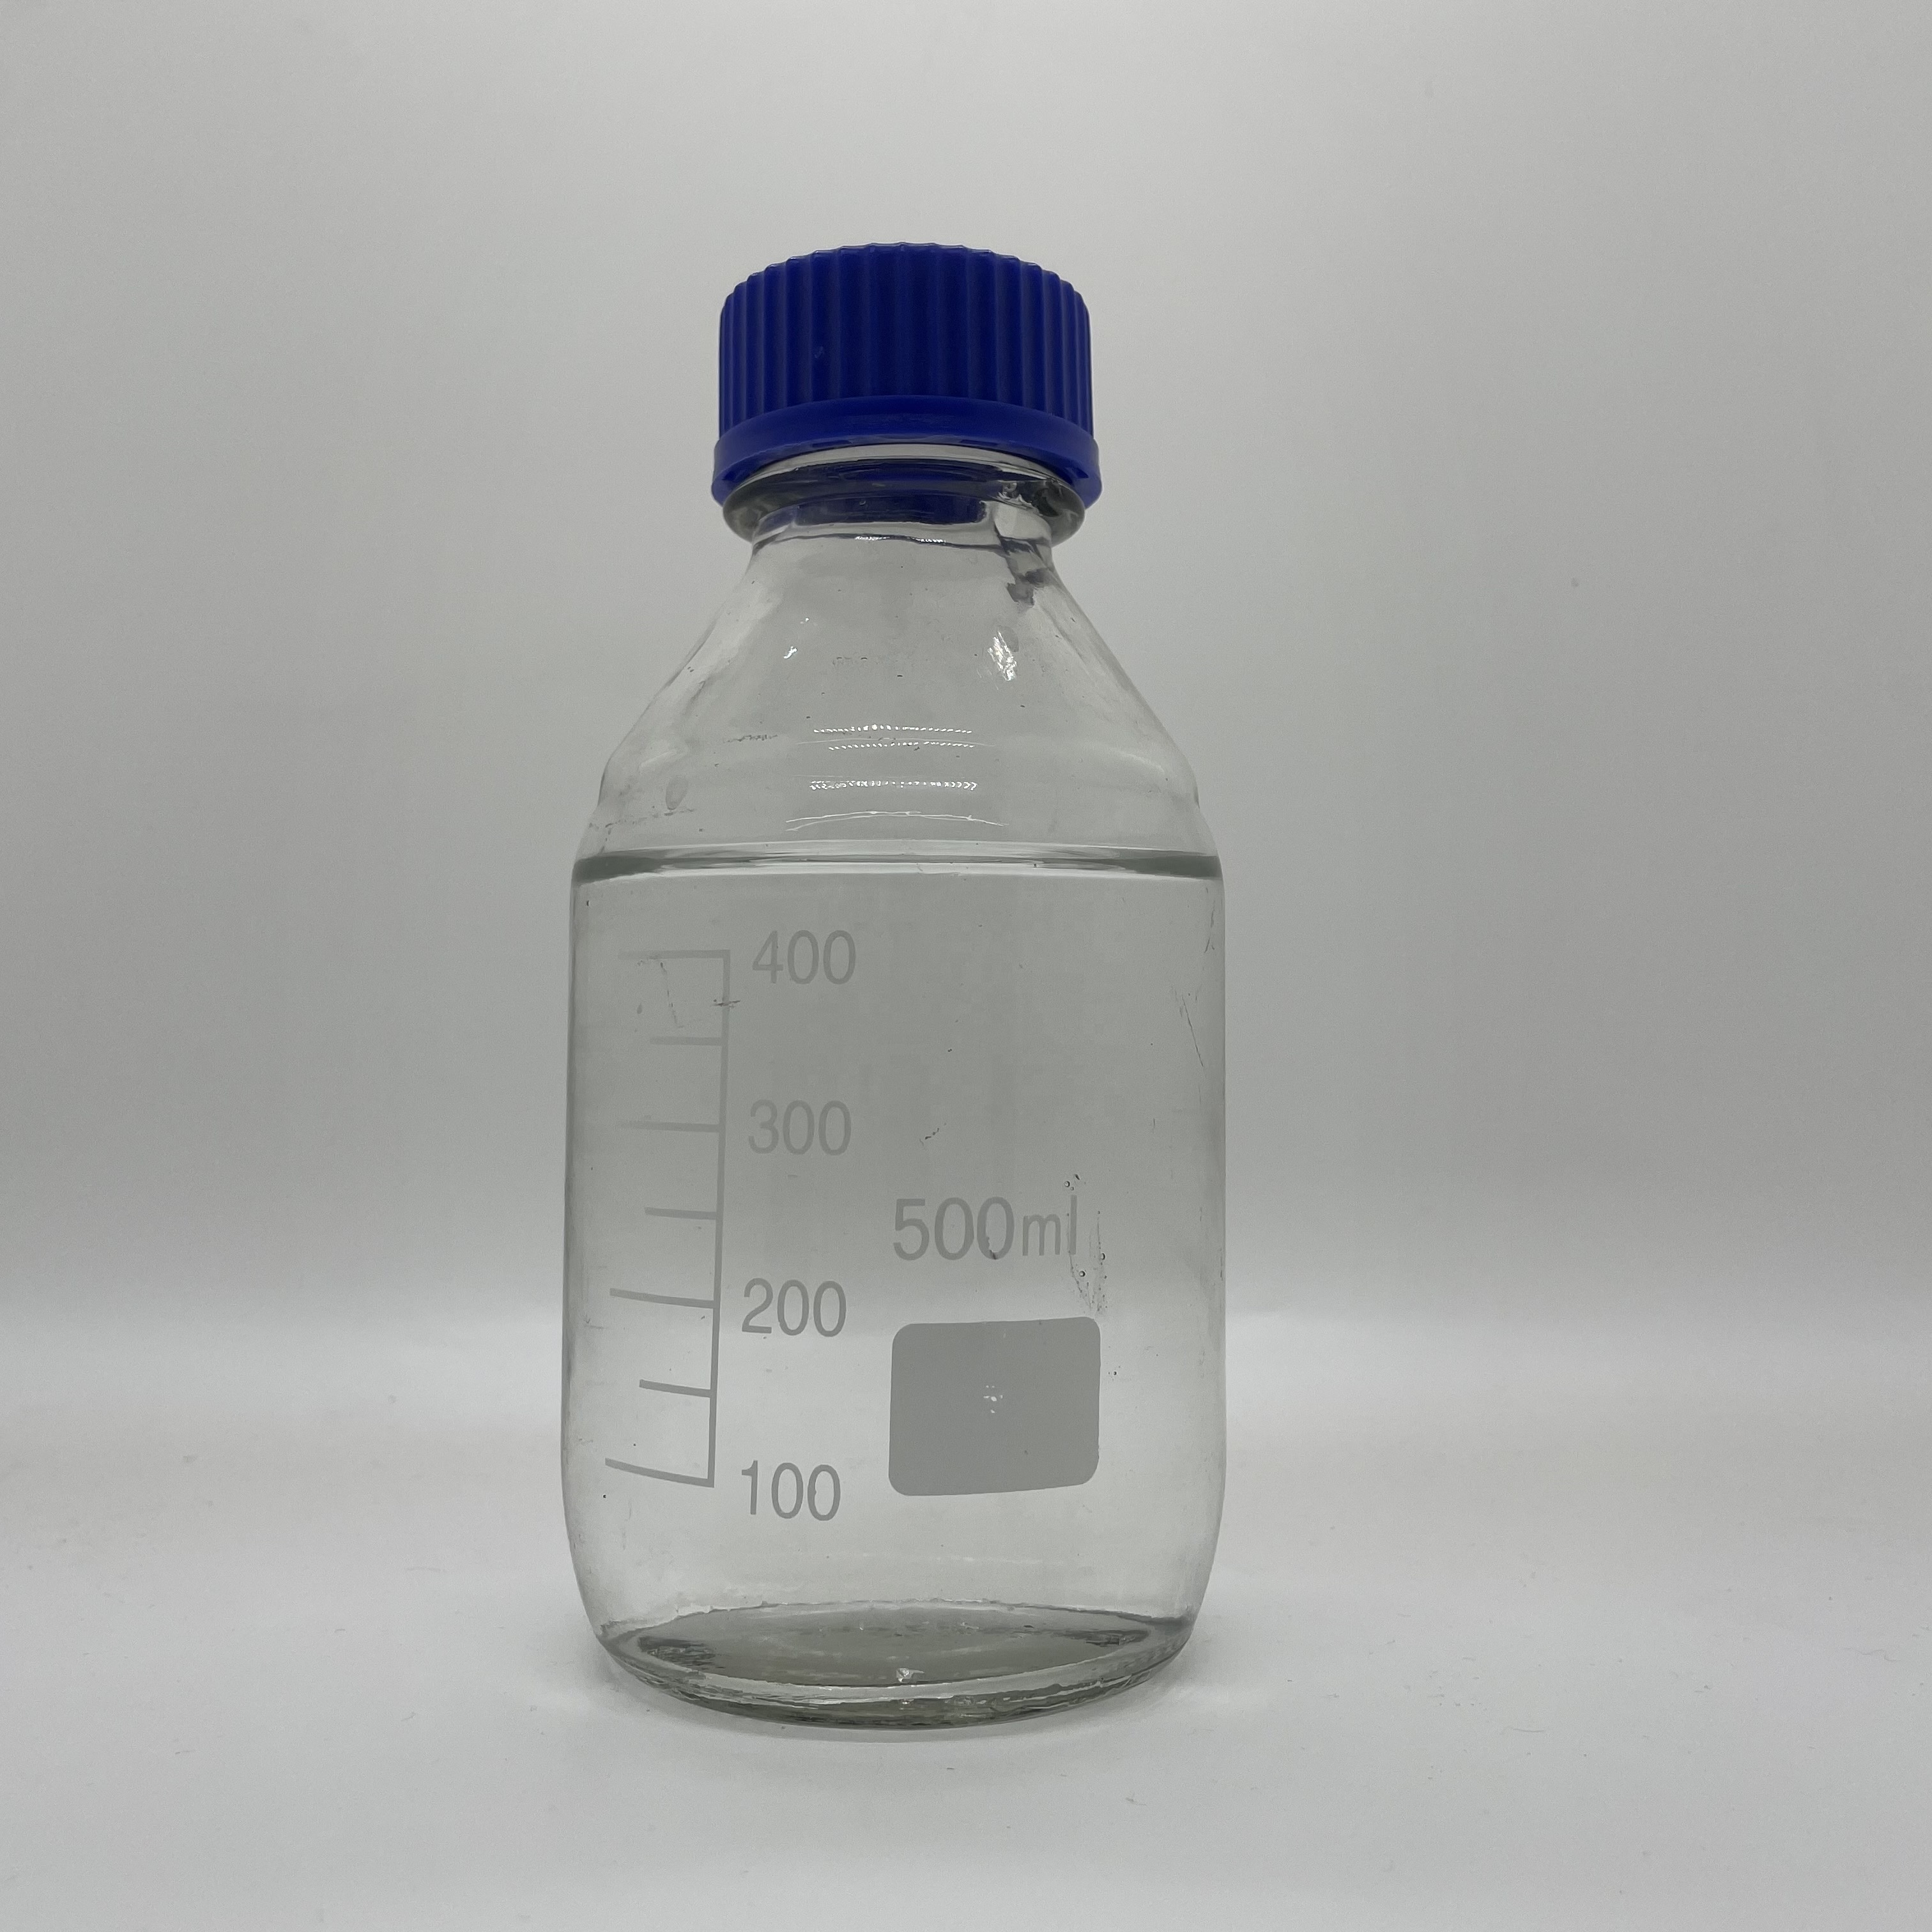 2-Ethyl Hexyl Palmitate 